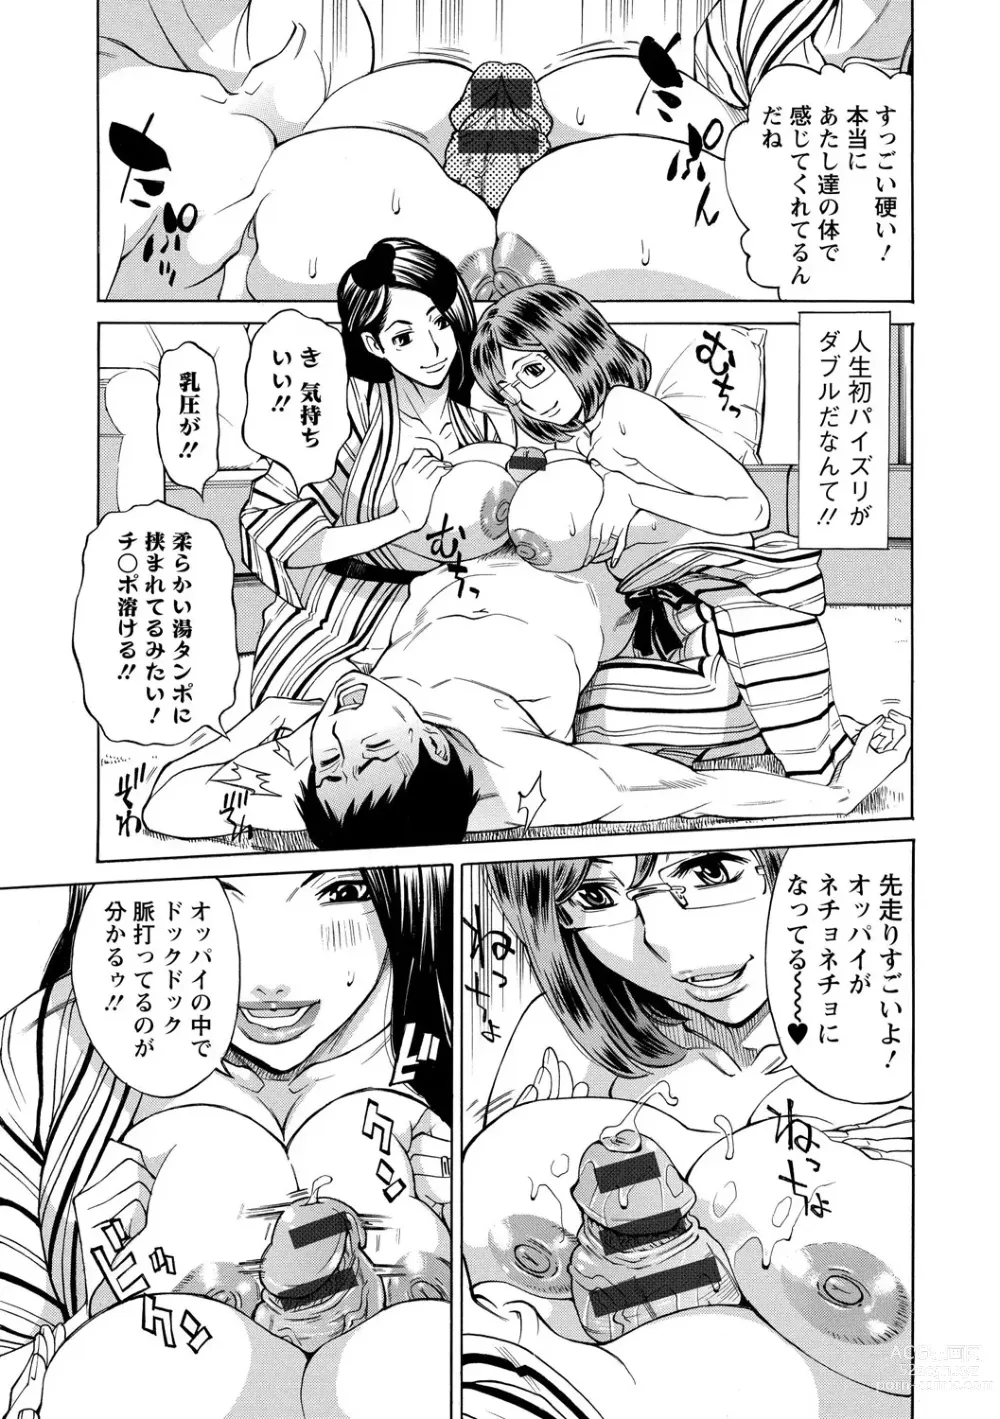 Page 15 of manga Inniku Jukujo no Namashibori.